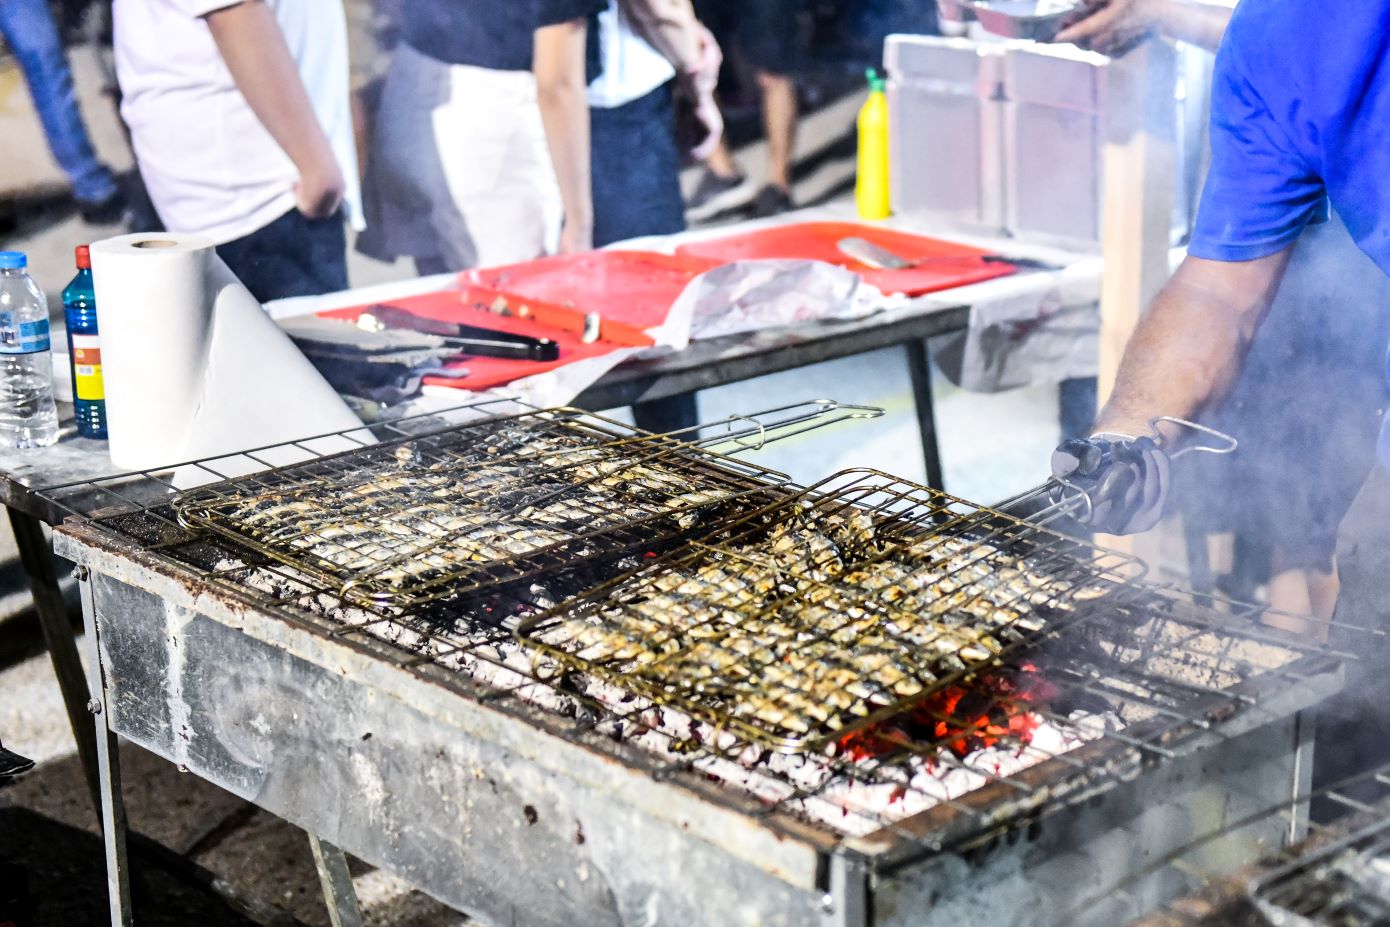 Γεύση, παράδοση και πολιτισμός στο ετήσιο φεστιβάλ σαρδέλας Καλλονής &#8211; Το προϊόν-τοπόσημο της Λέσβου